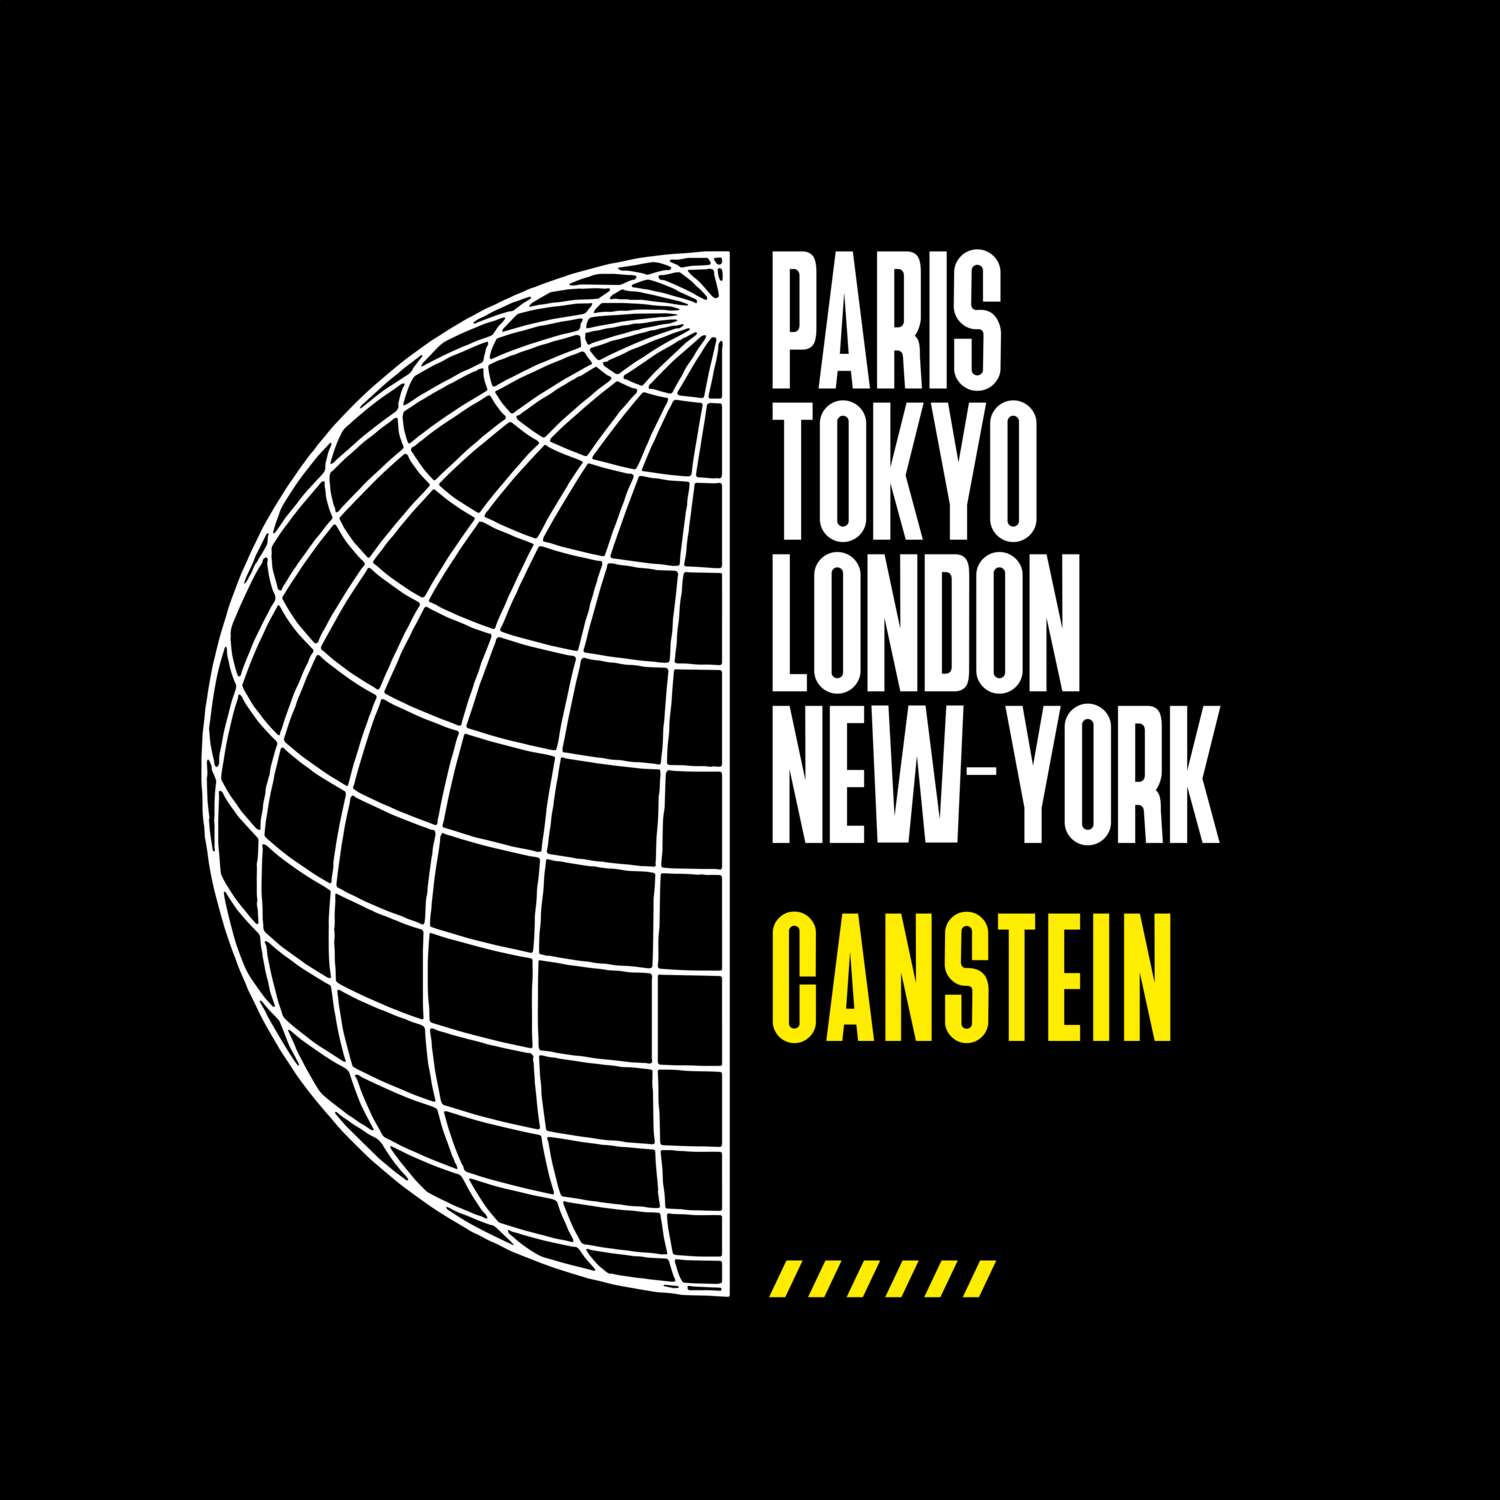 Canstein T-Shirt »Paris Tokyo London«